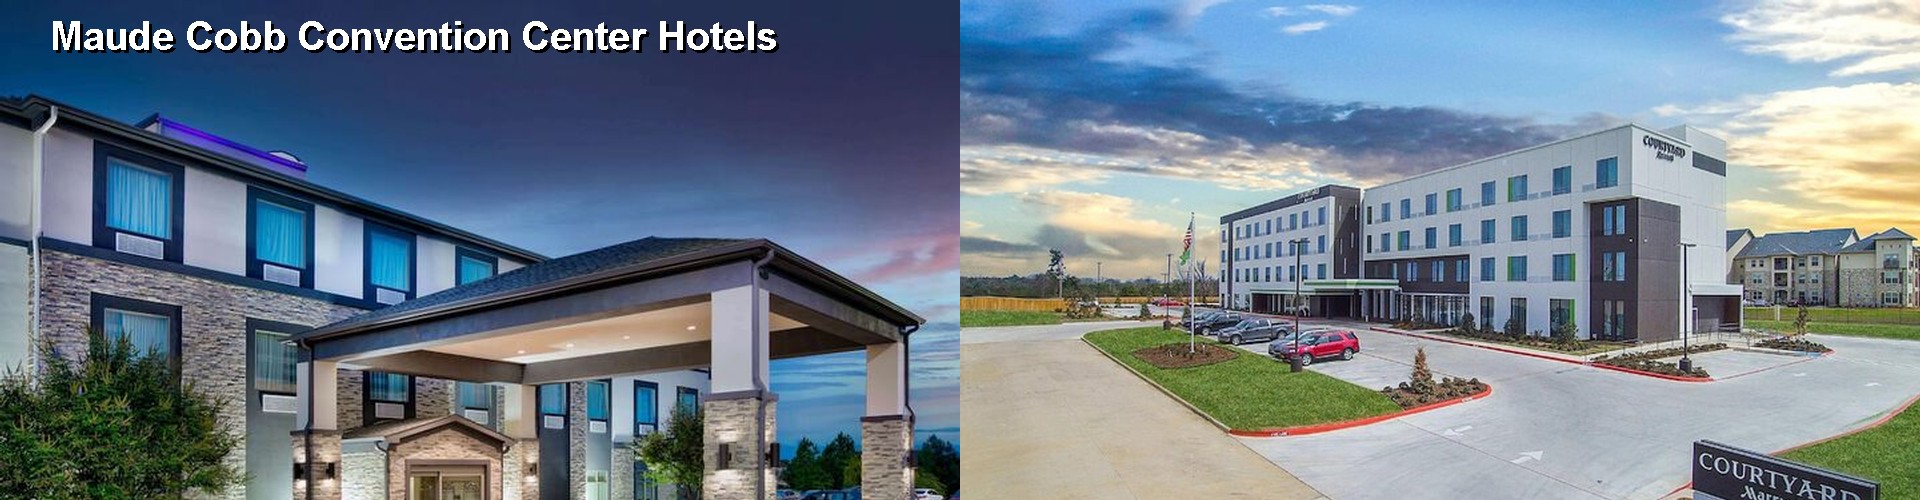 5 Best Hotels near Maude Cobb Convention Center